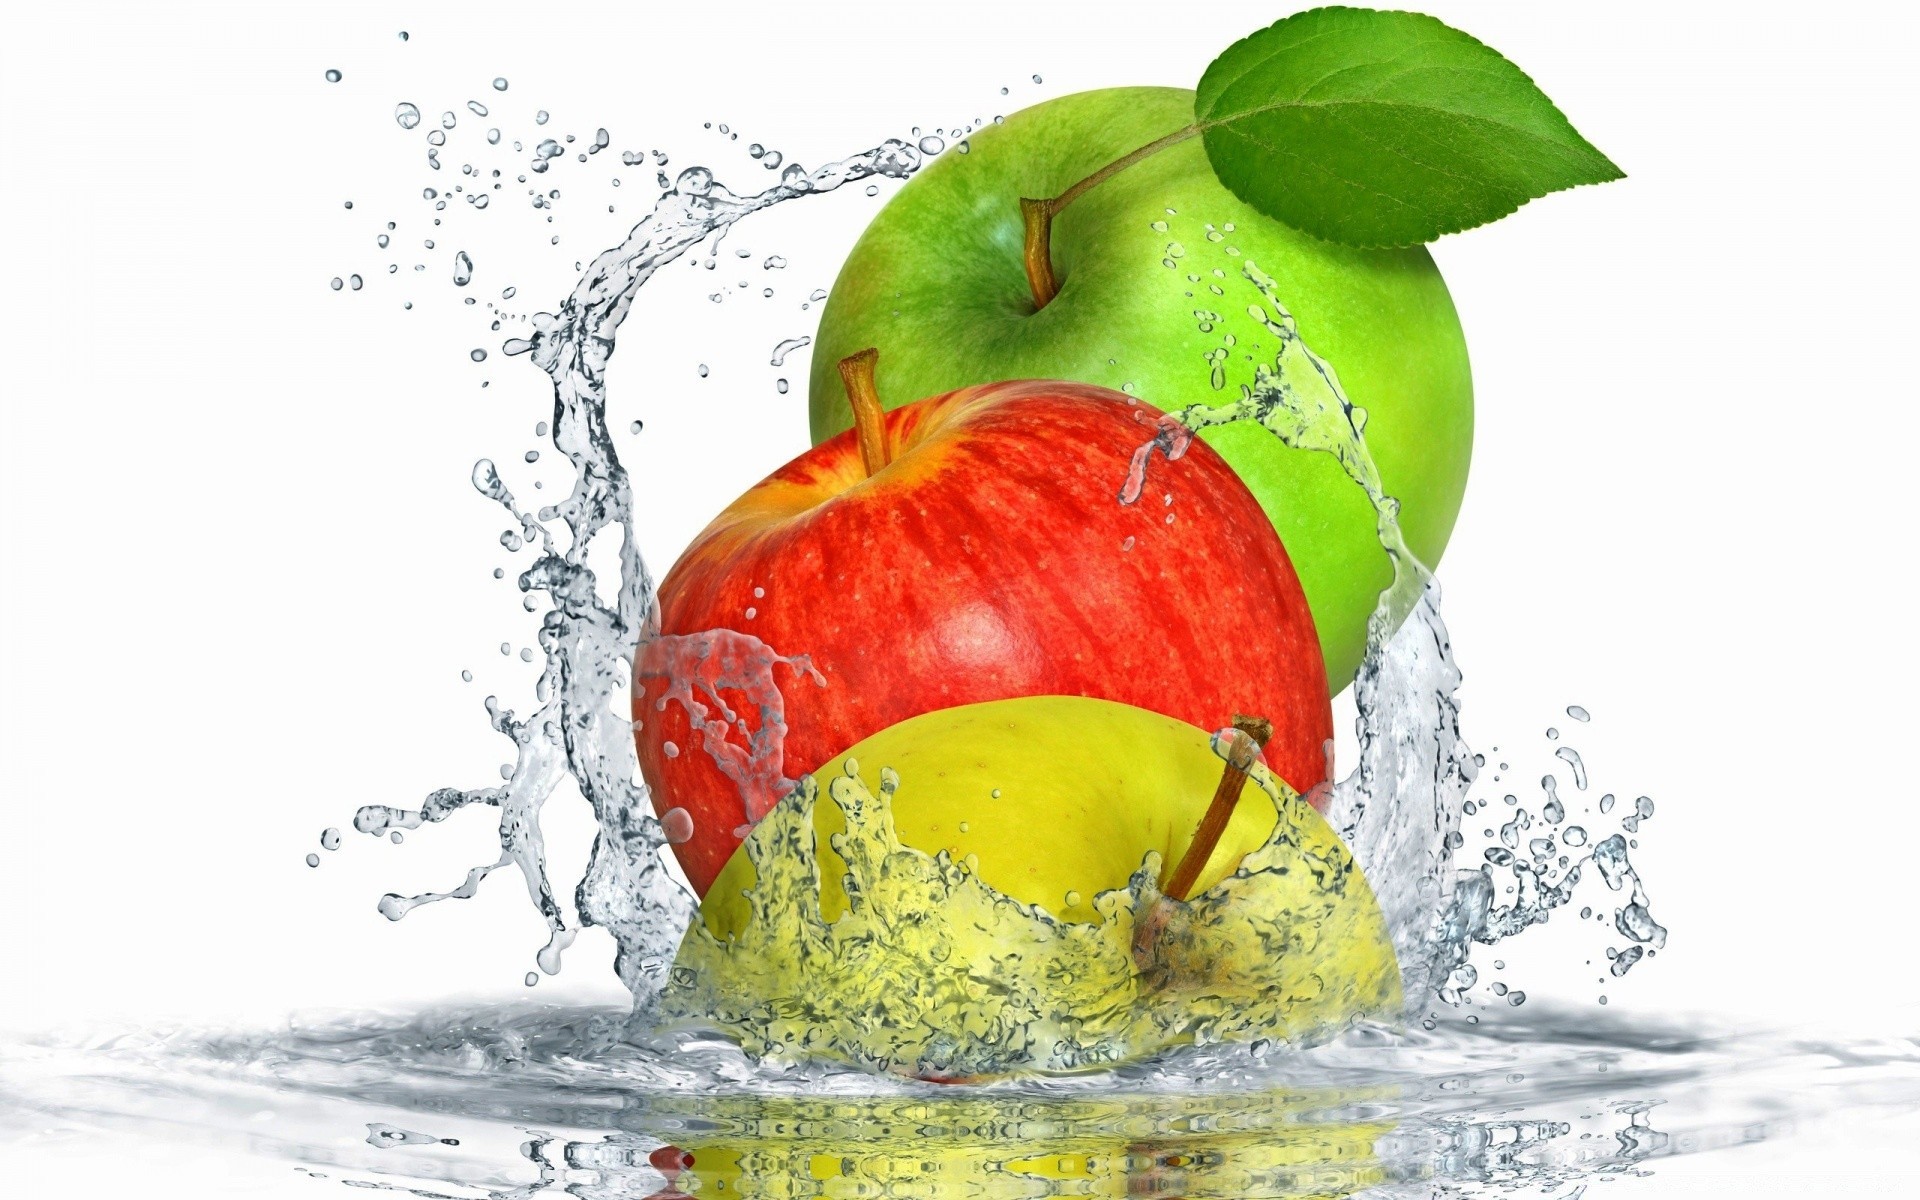 fruit wet drop splash cold food liquid healthy water refreshment bubble health juice juicy drink apple